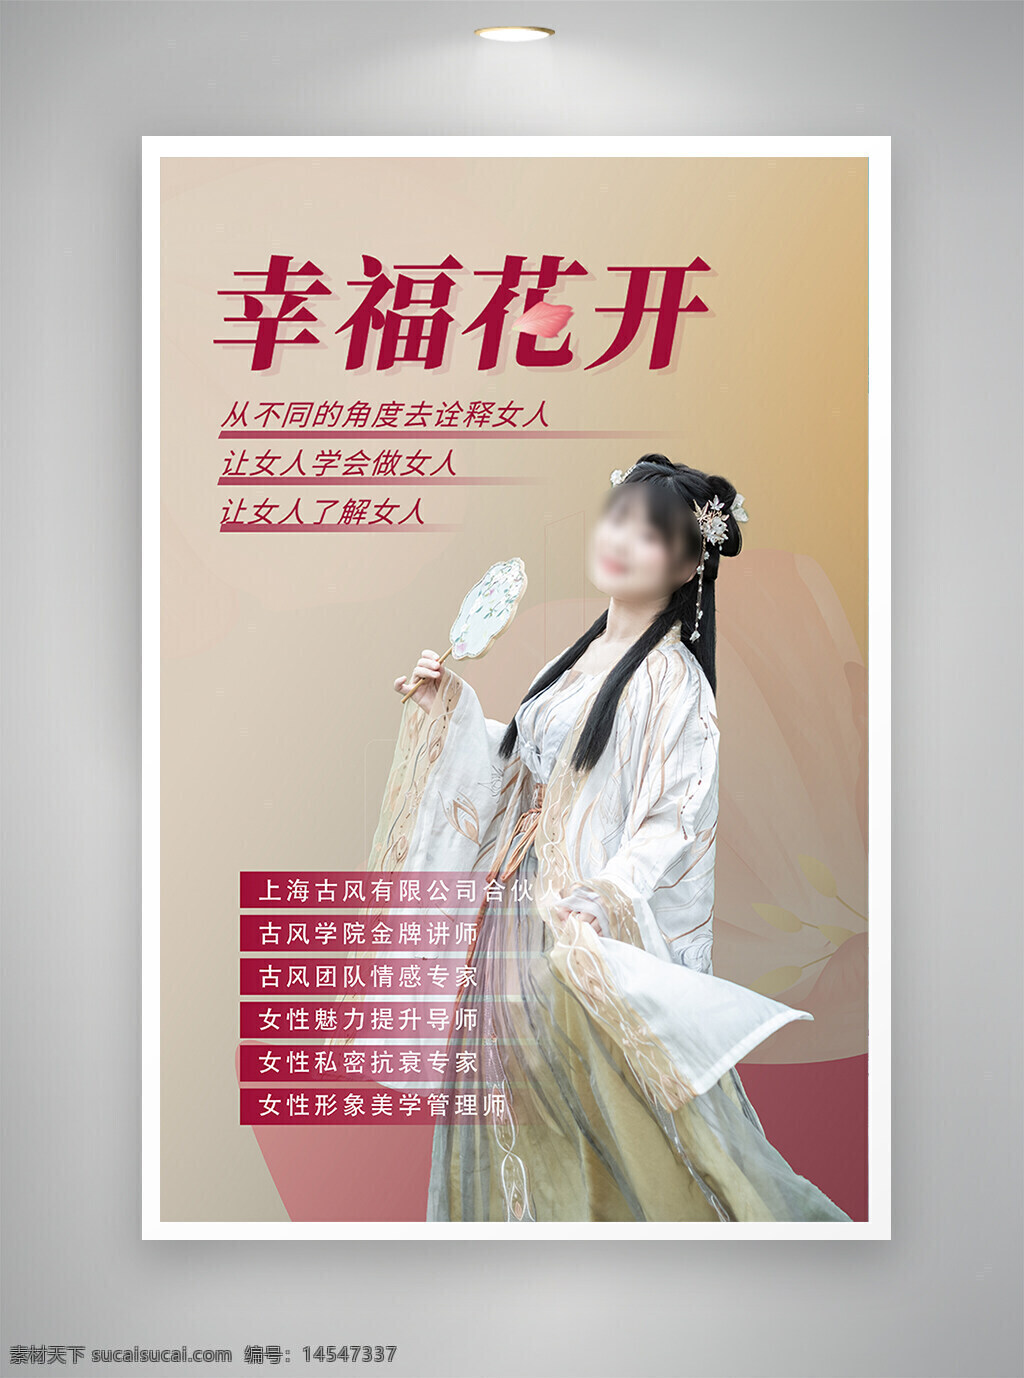 中国风海报 促销海报 节日海报 古风海报 幸福